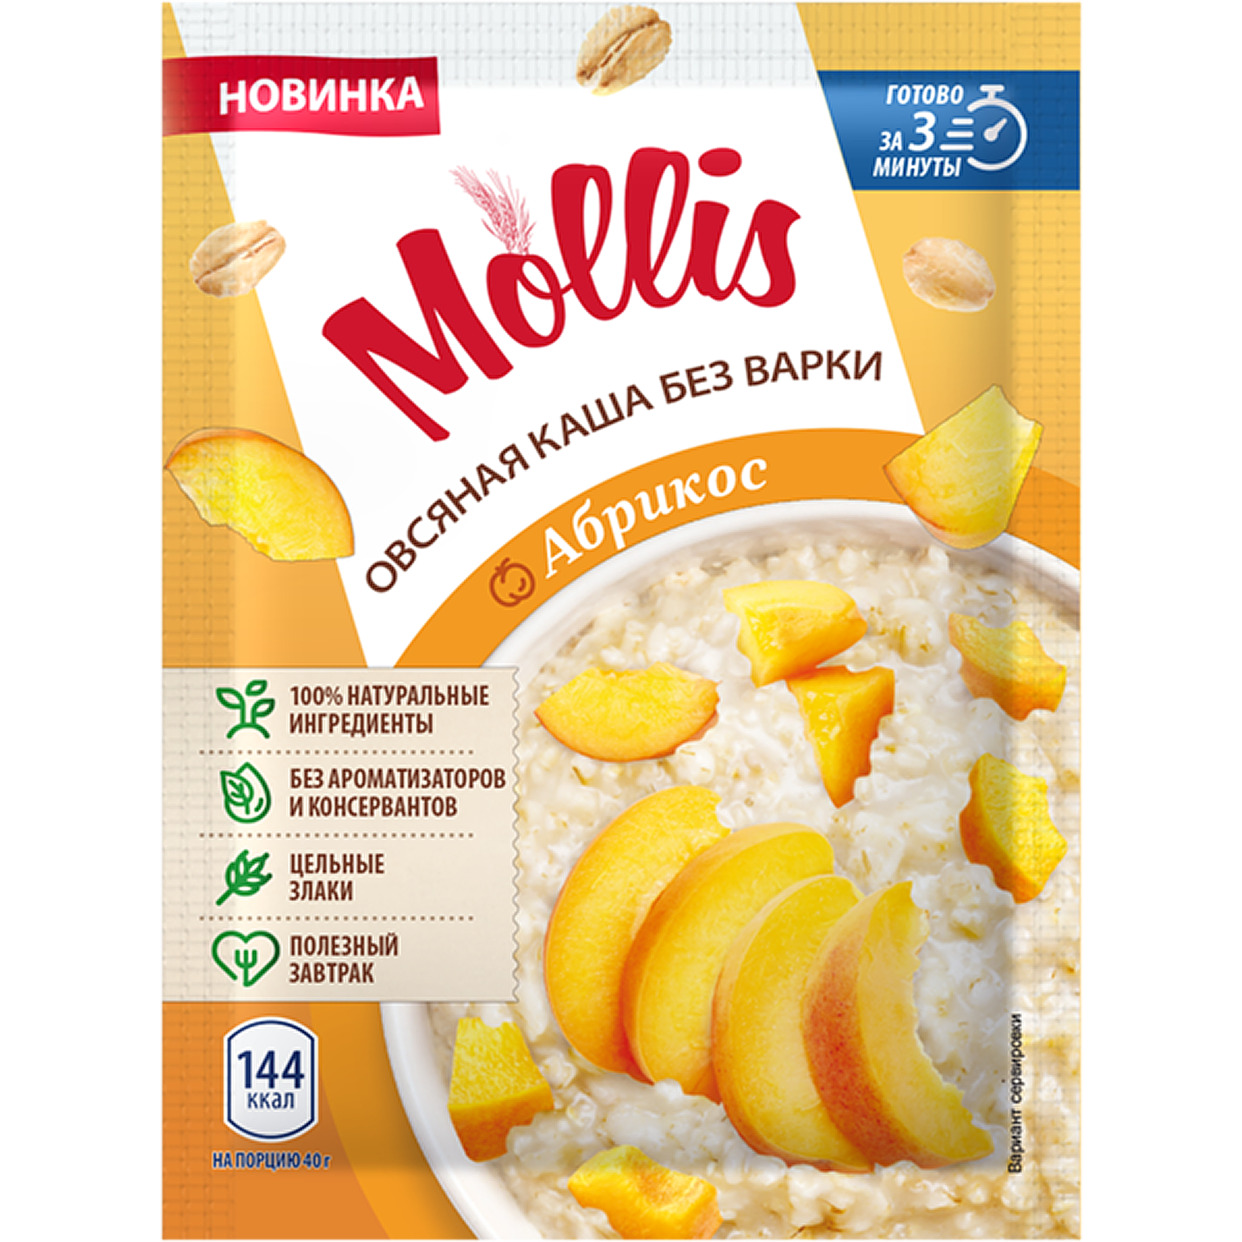 Продукт зерновой для завтрака Каша овсяная с абрикосом т/м Mollis 40гр.